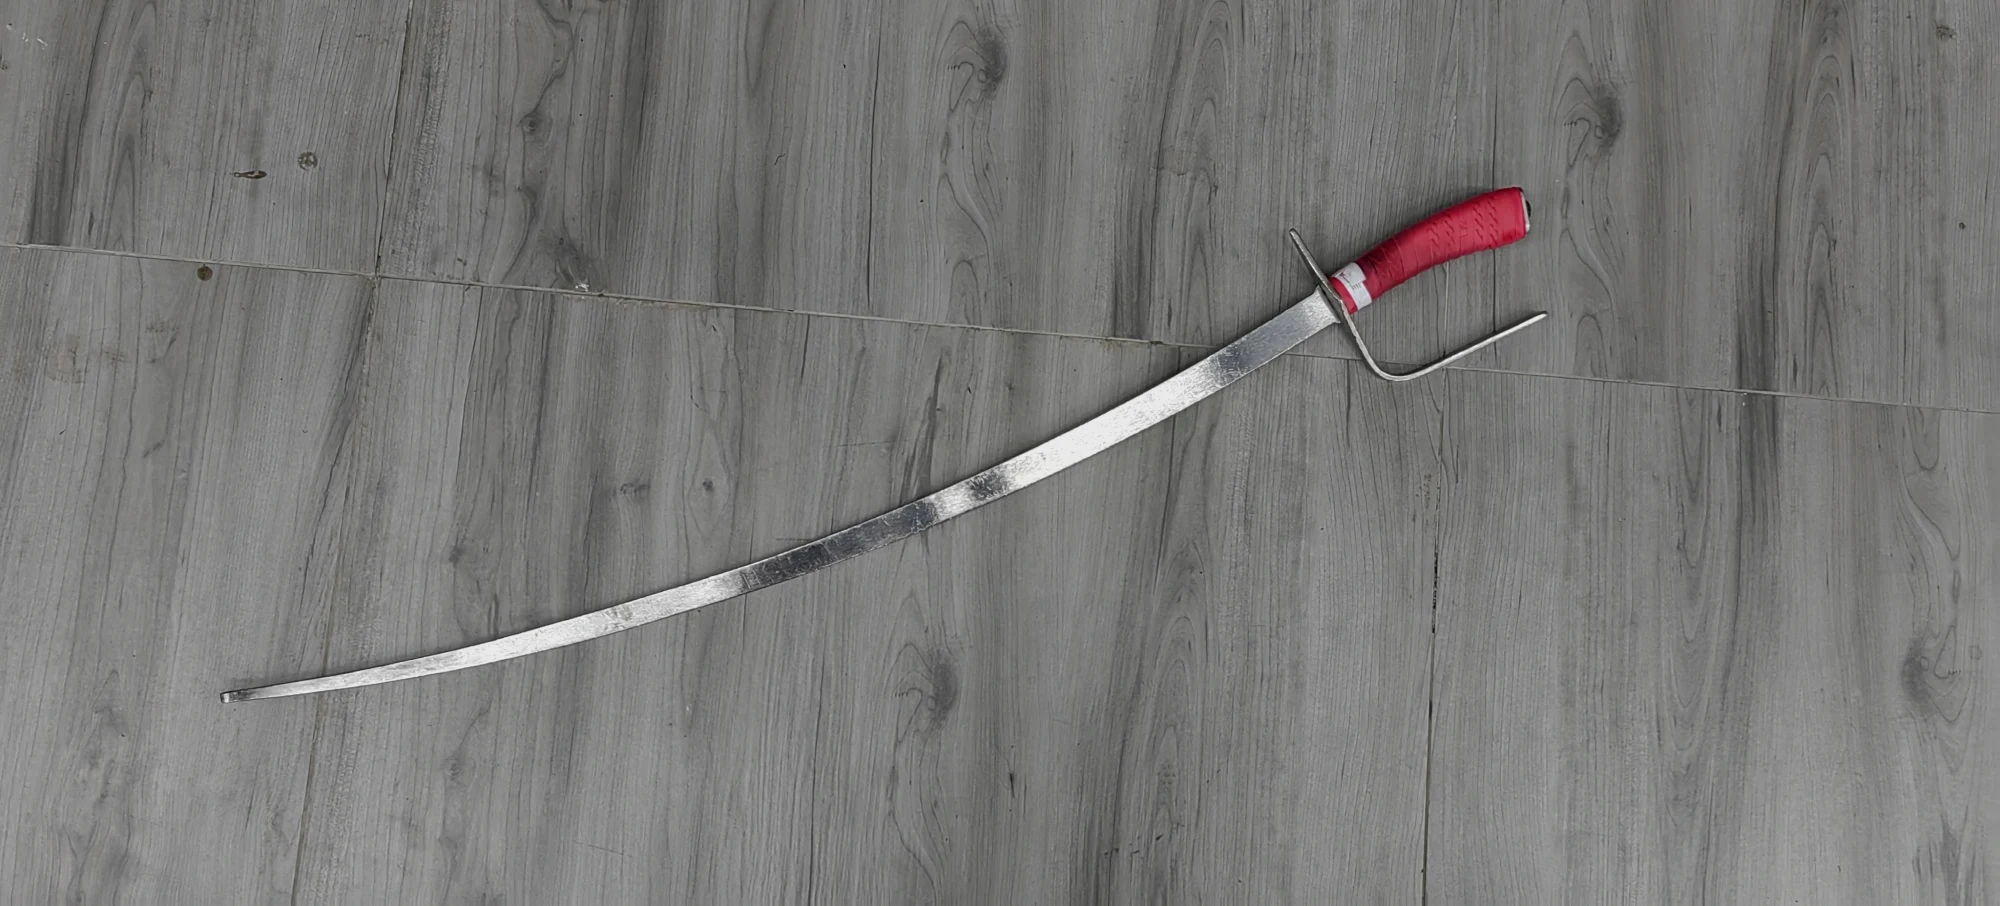 国产的妖妖波兰军刀，比较容易在国内买到的对练波刀